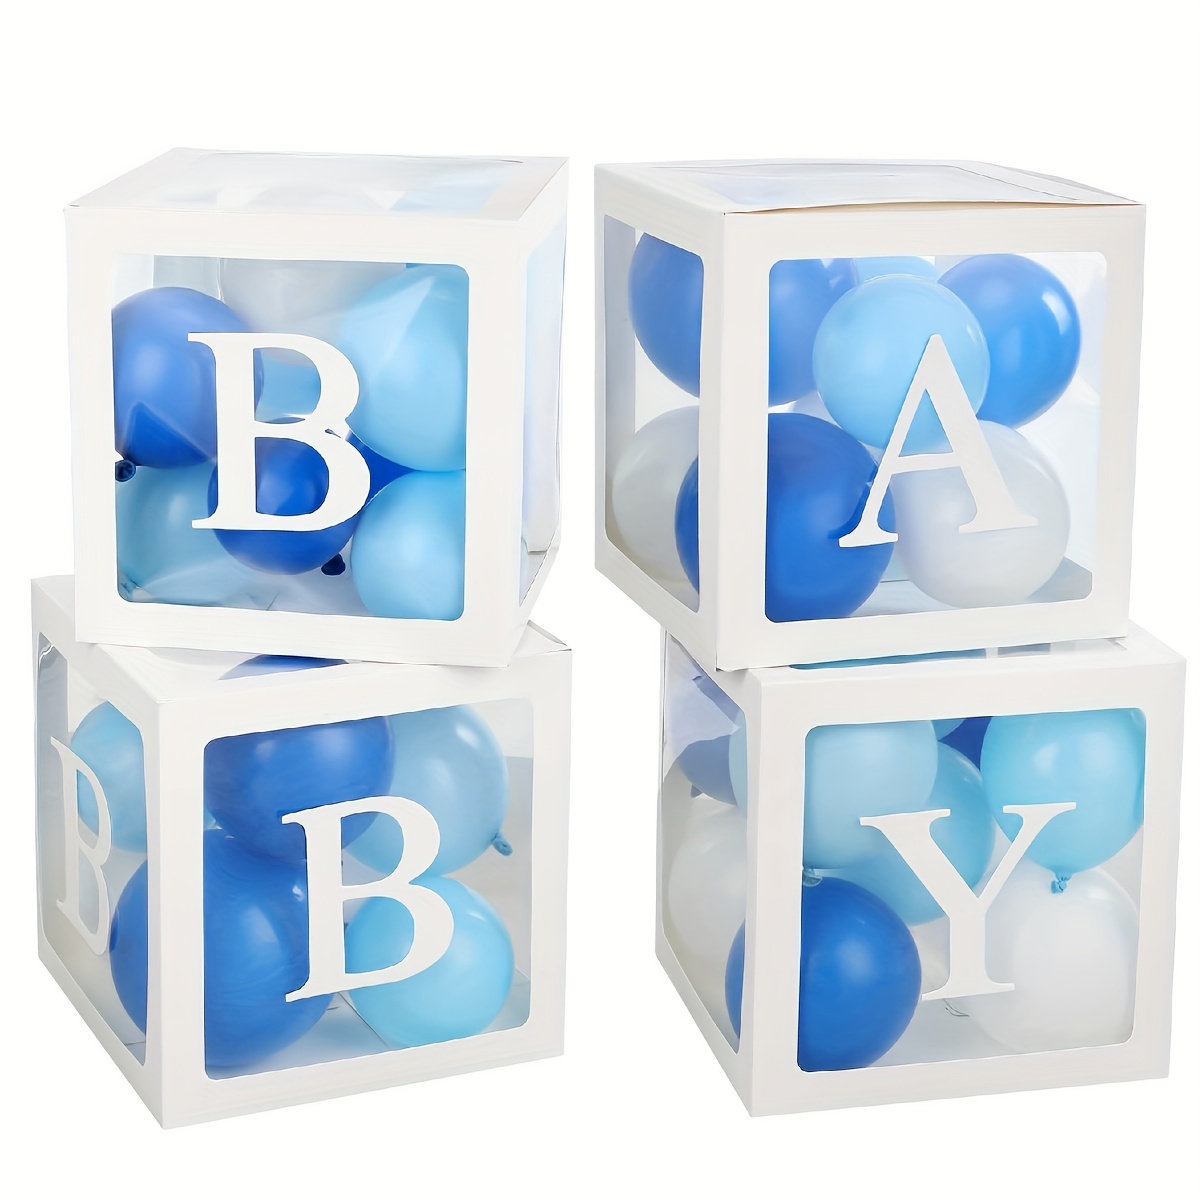  Cajas de baby shower para decoración de fiesta, 4 piezas, cajas  de globos transparentes con letras para decoración de bloques de bebé,  diseño para baby shower, revelación de género, telón de